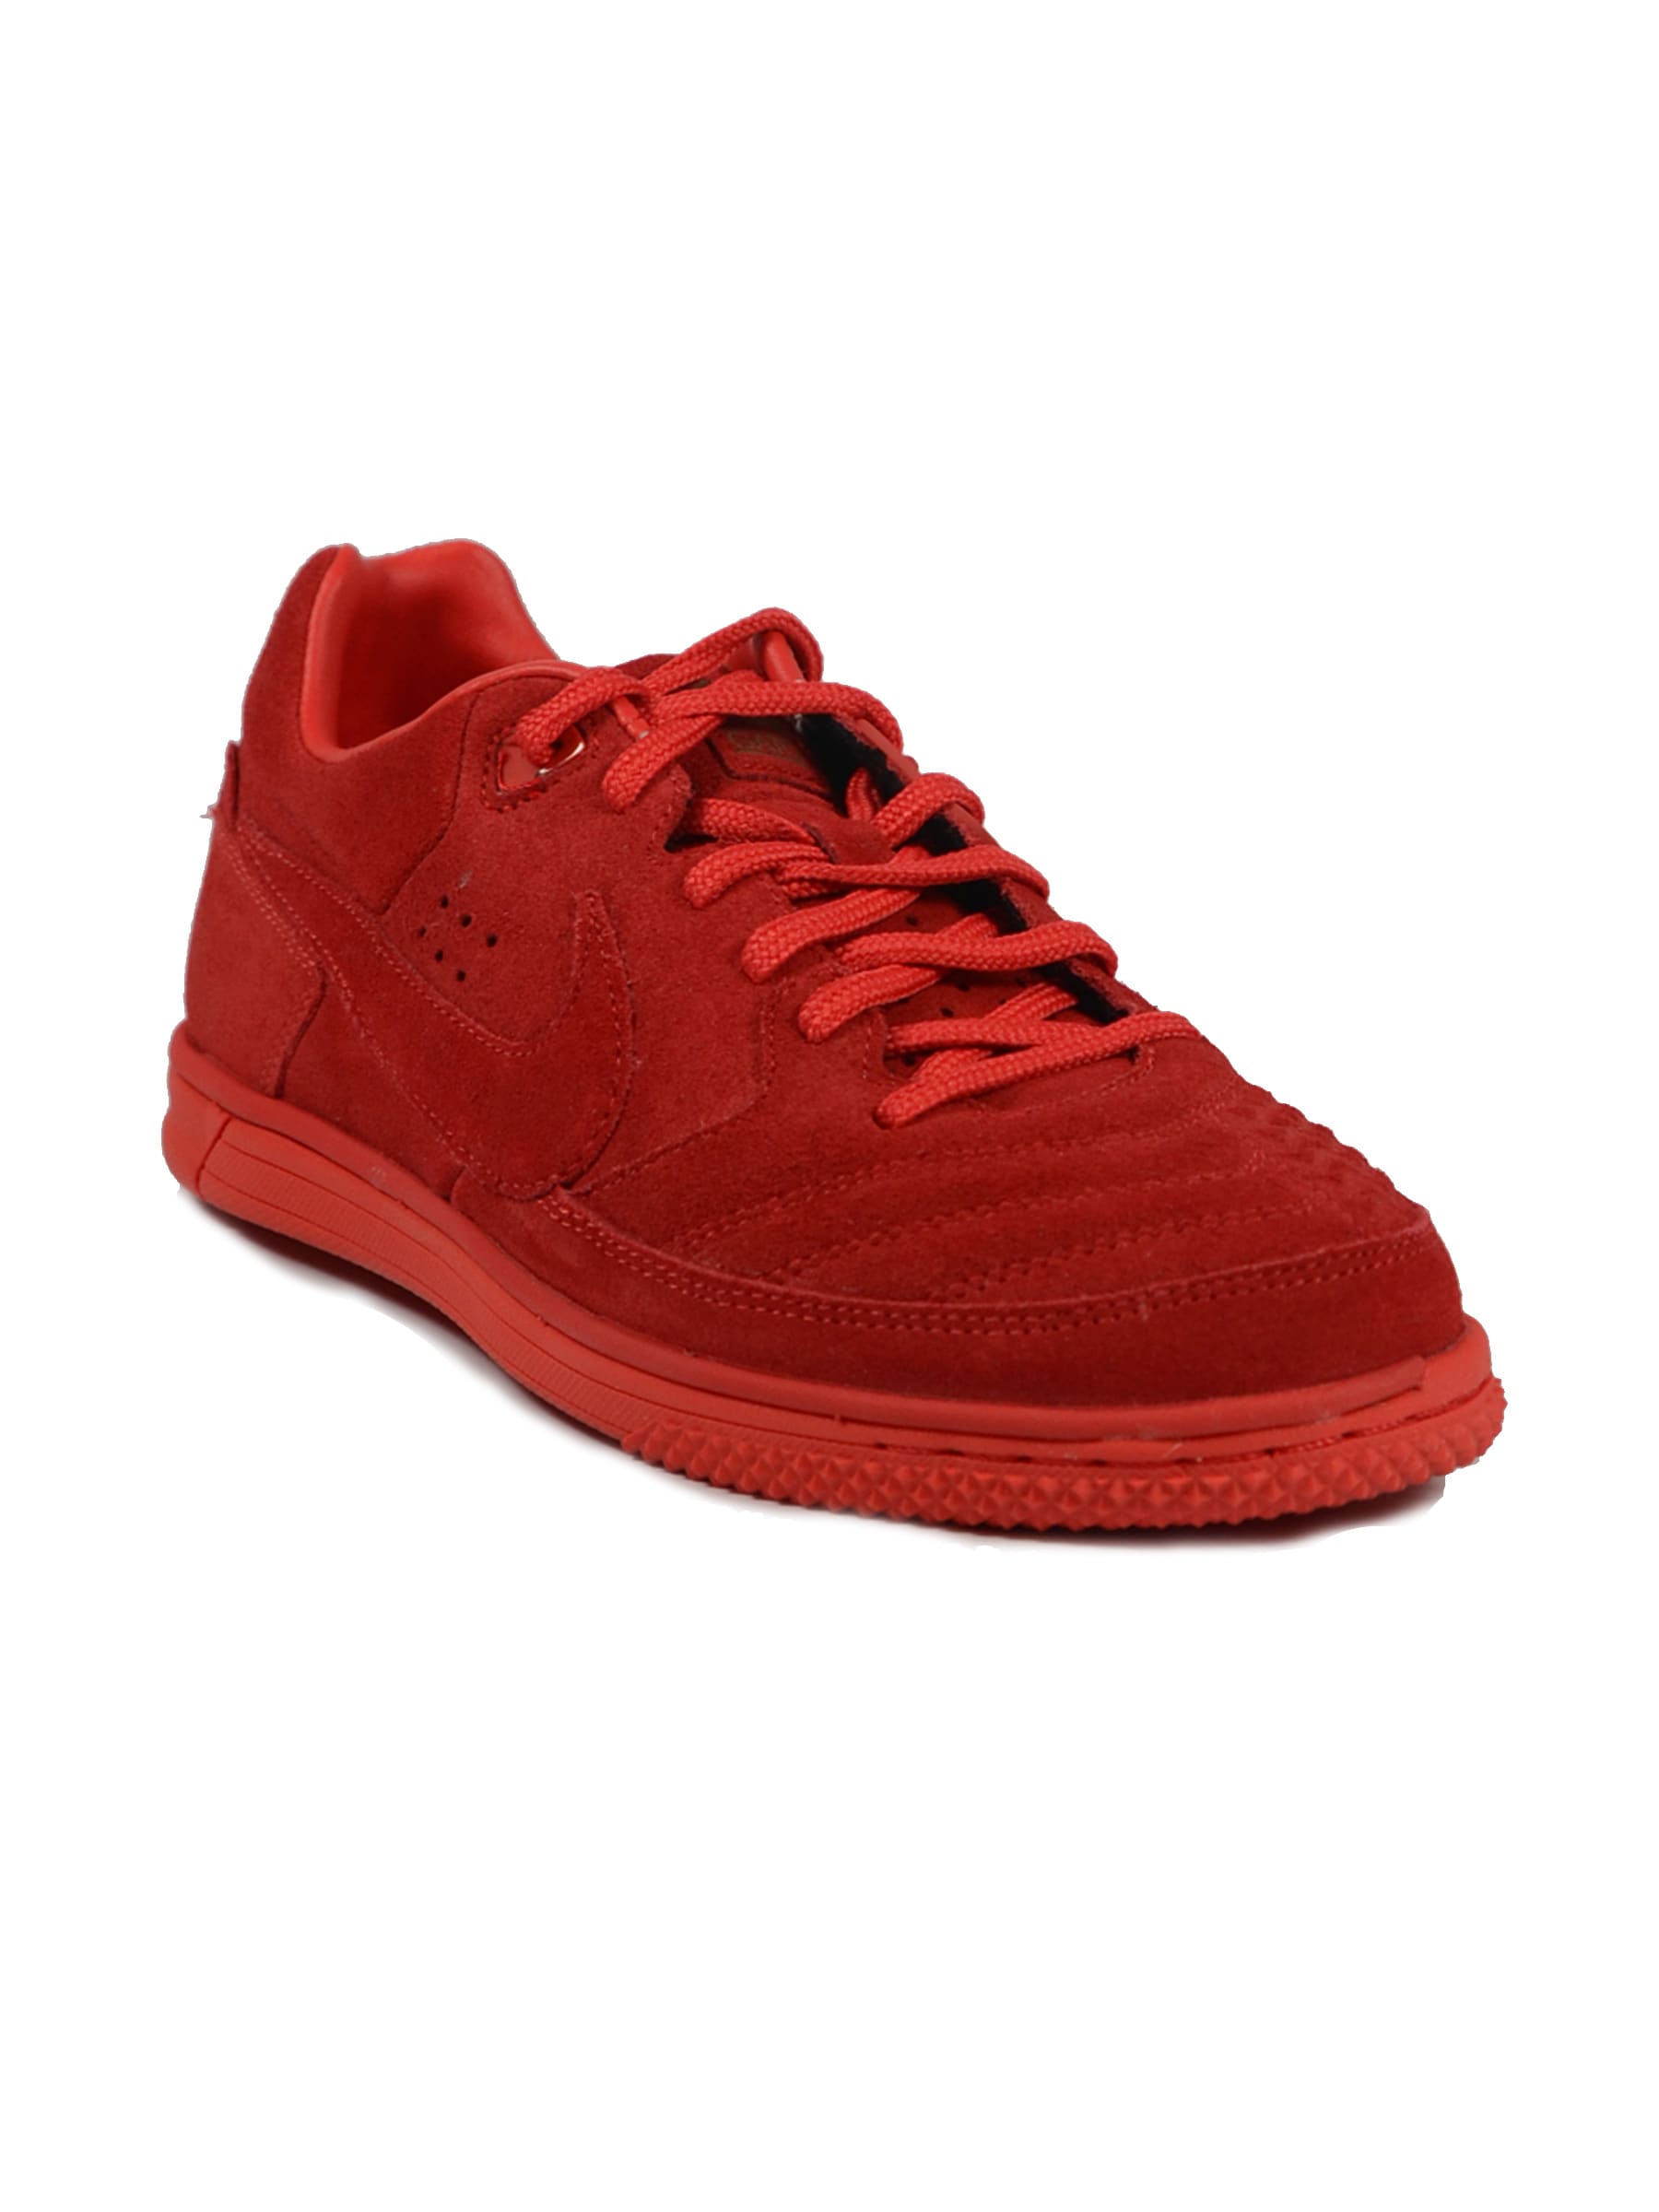 Nike Men 5 Street G Red Shoe